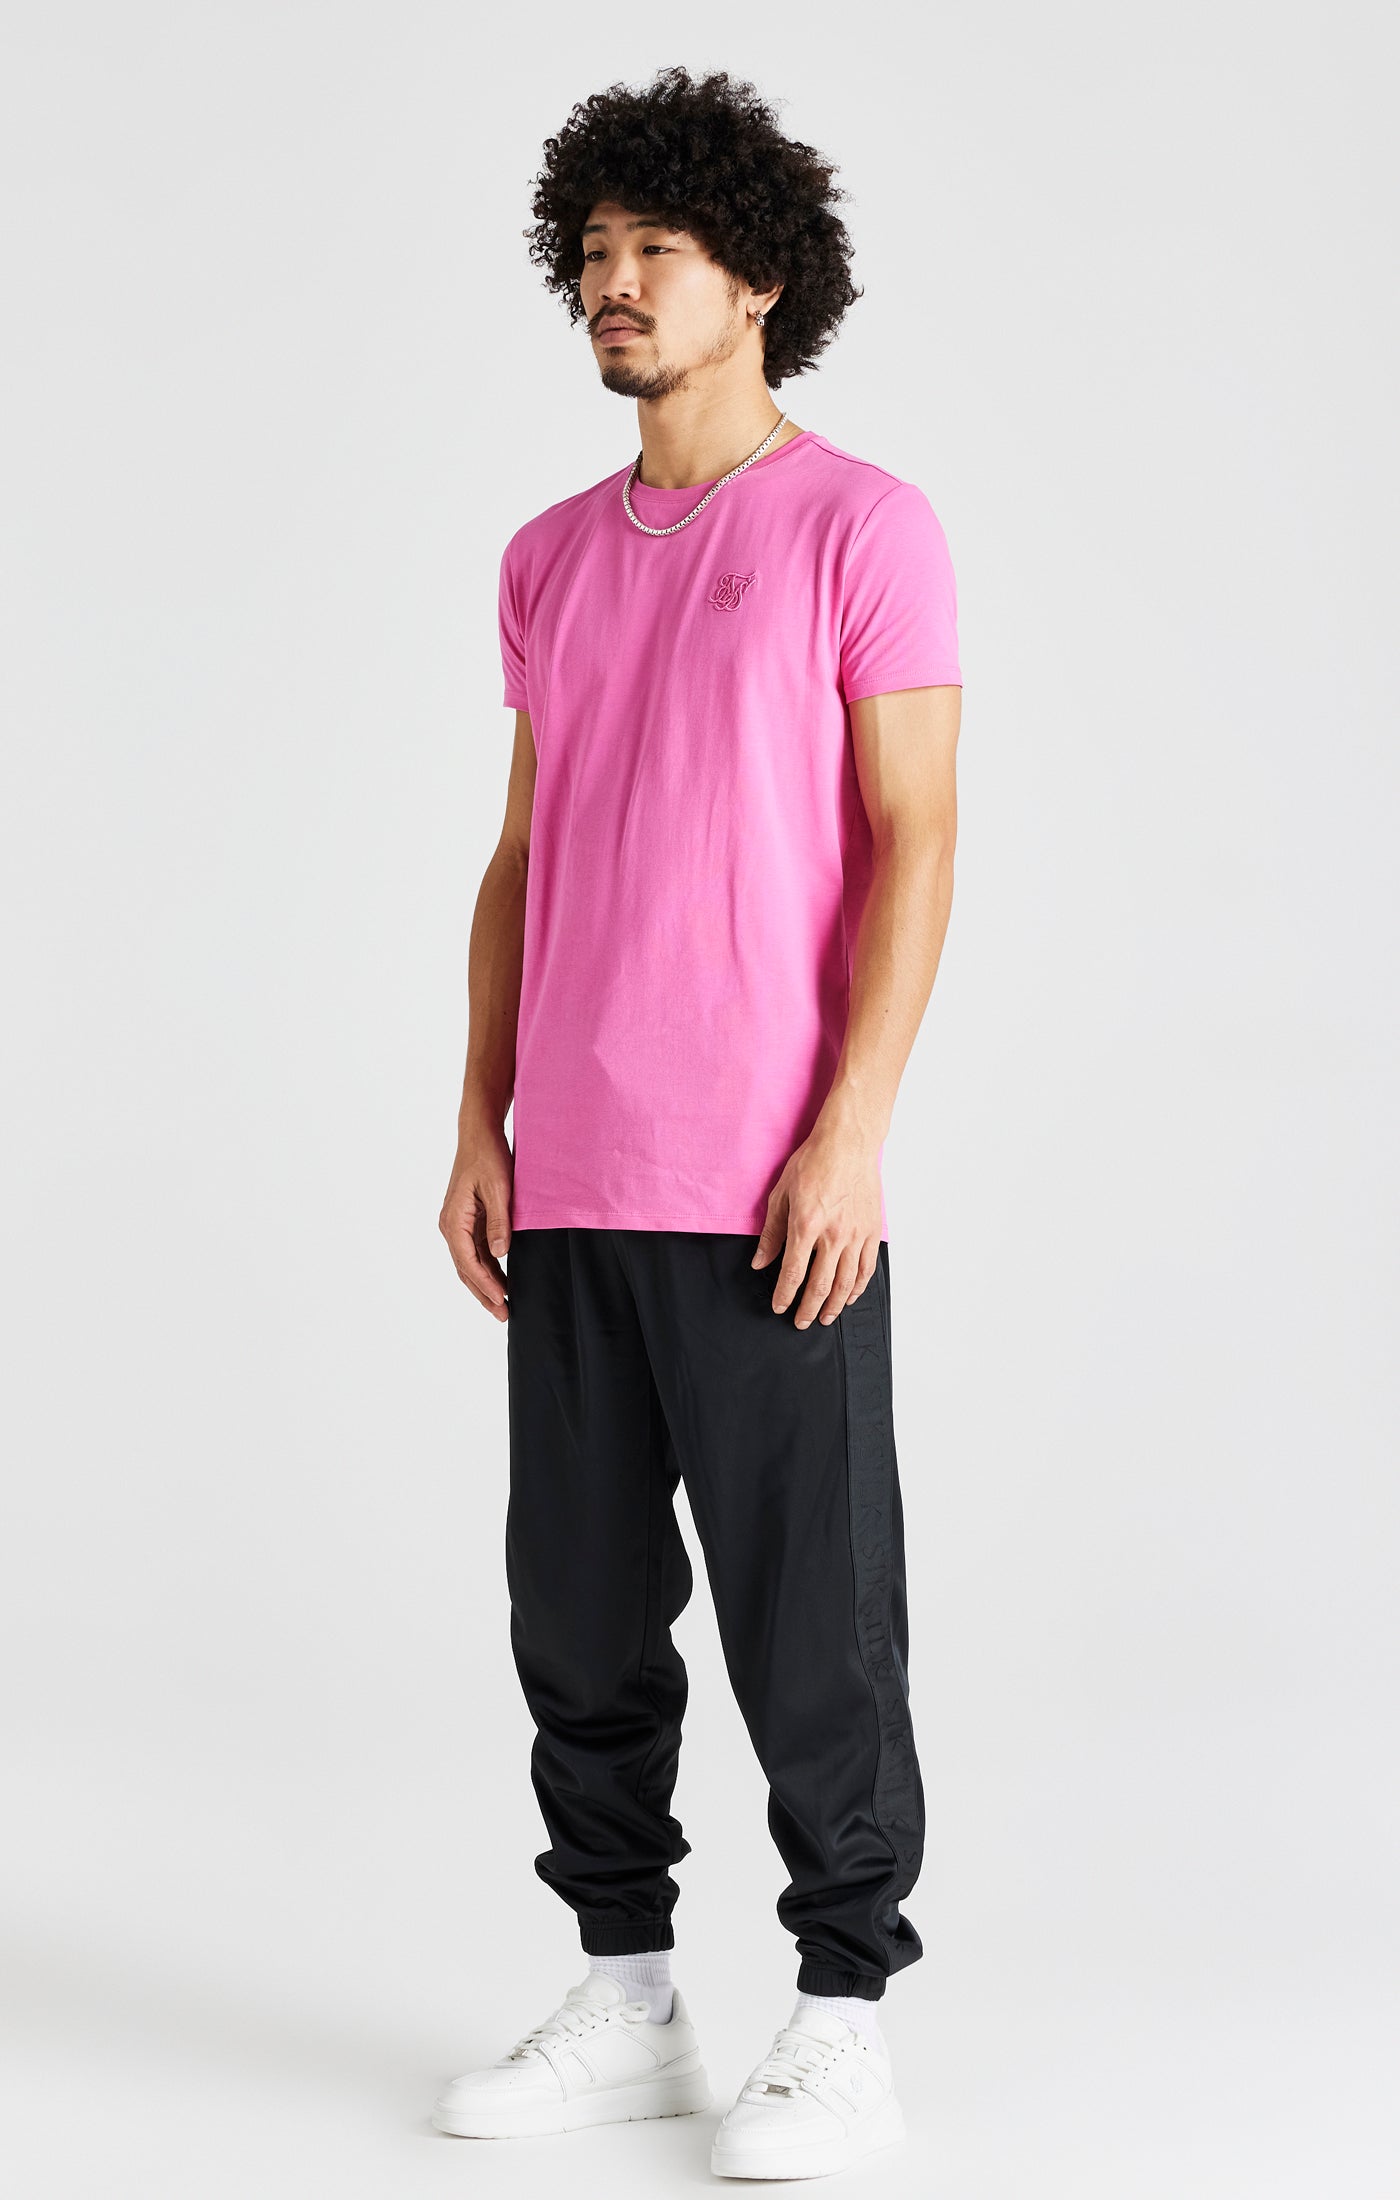 Pinkes Kurzärmliges Muskelfitness T Shirt (3)